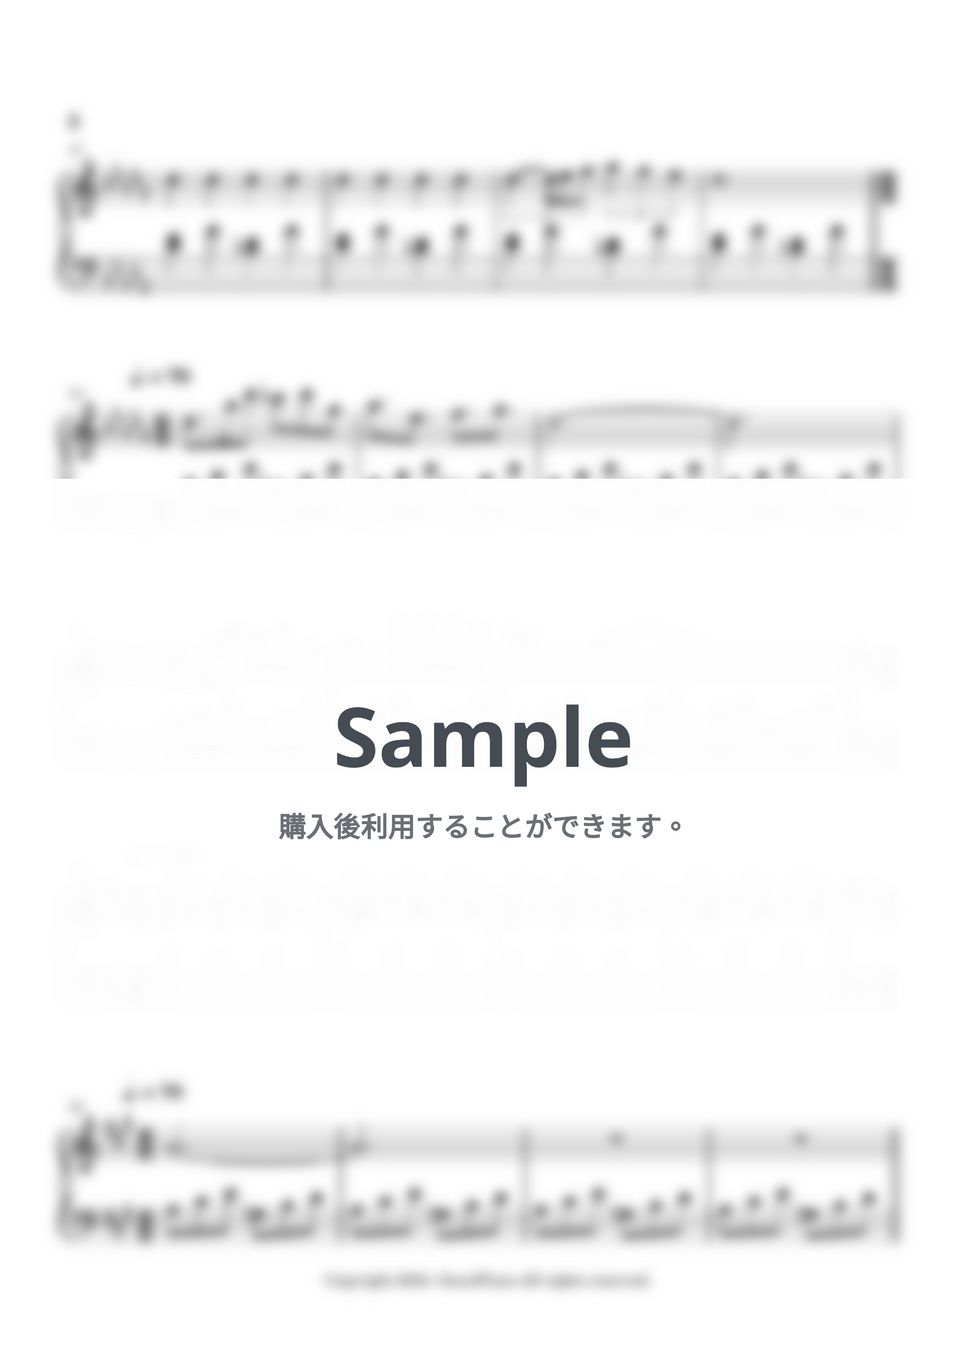 松谷卓 - 真実か挑戦か (君の膵臓をたべたい) by 今日ピアノ(Oneul Piano)